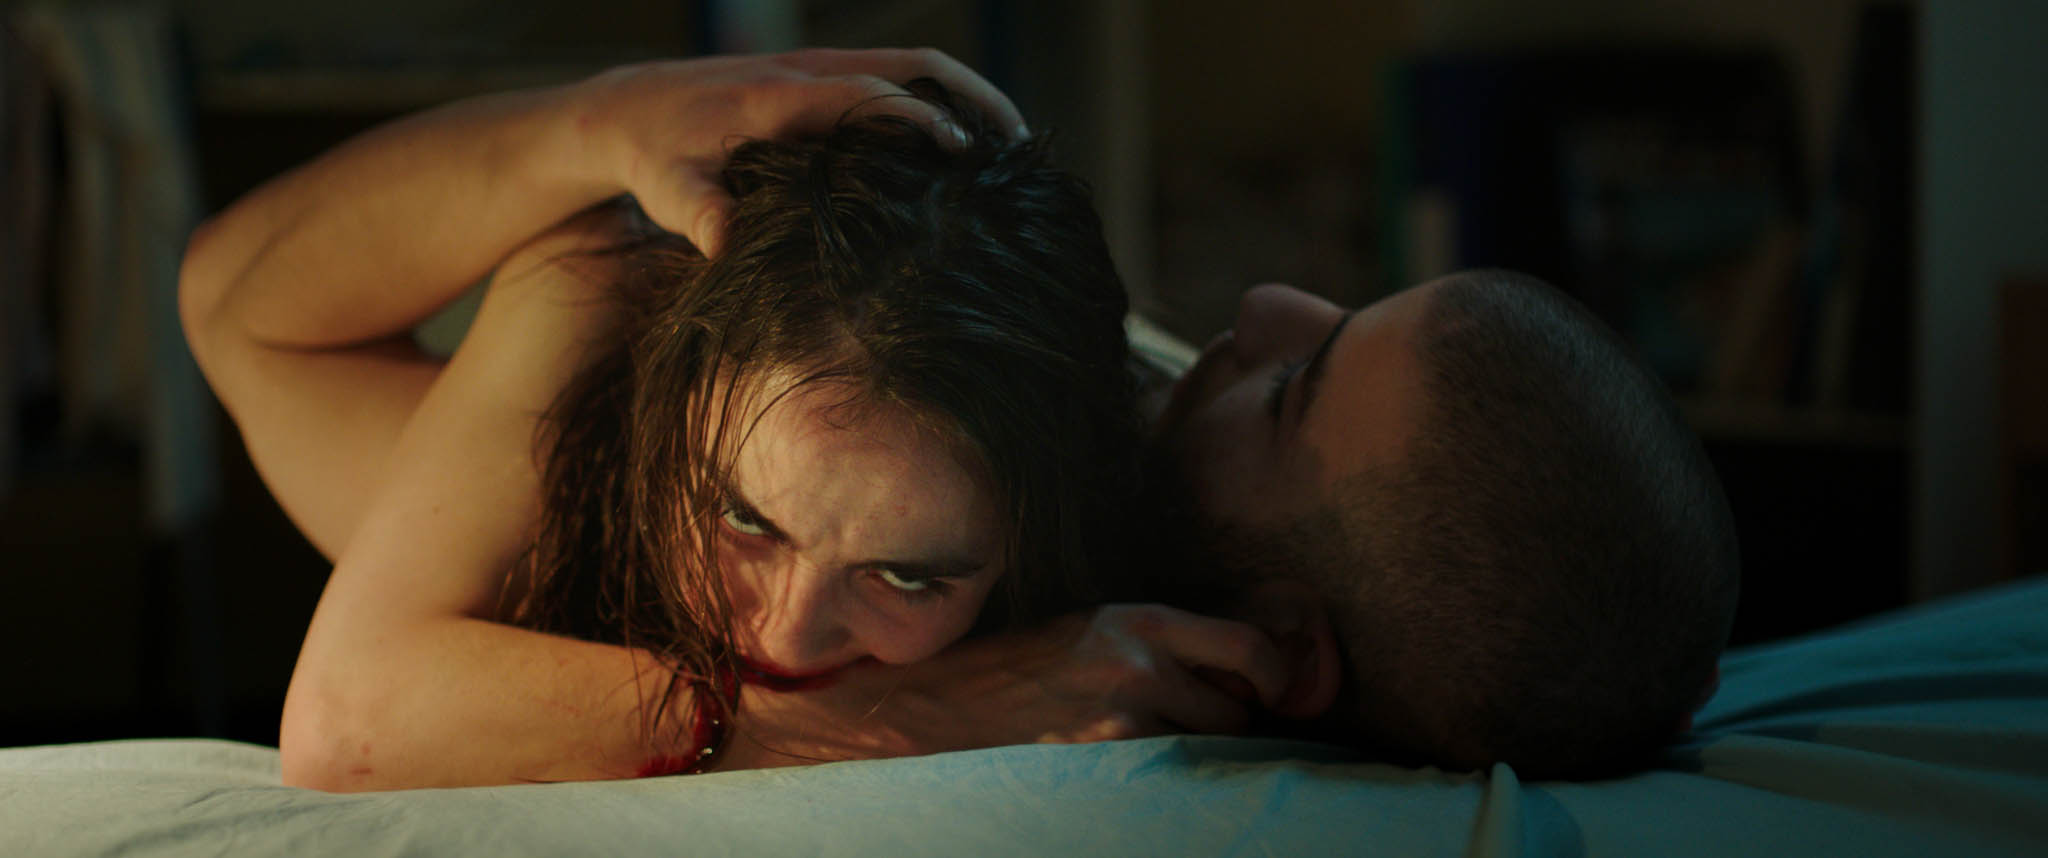 Raw: filme de terror sobre canibalismo está disponível na Netflix; veja o trailer +18